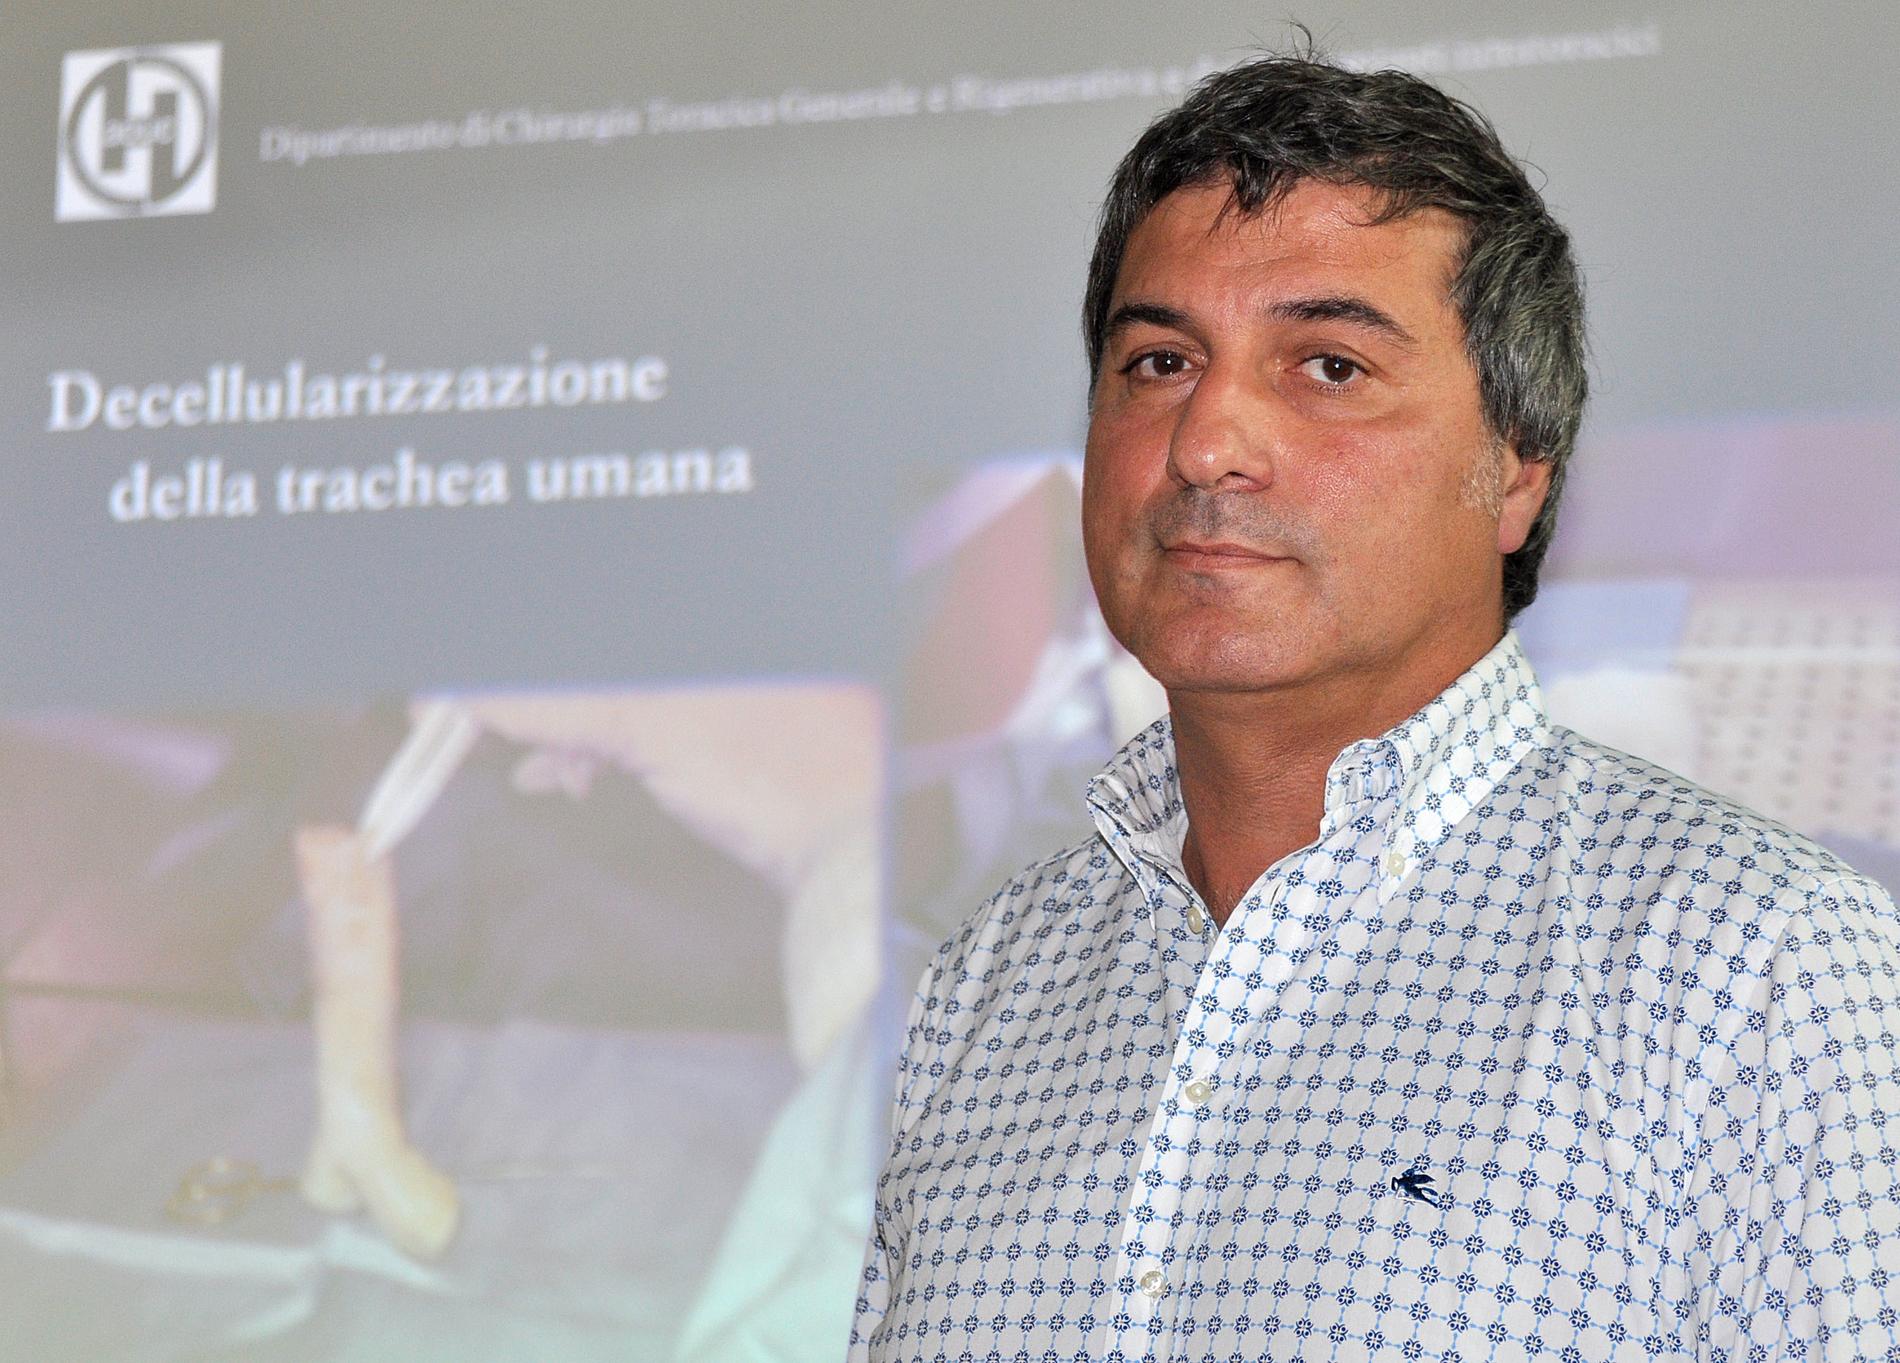 Paolo Macchiarini vid en pressträff i Italien 2010 där han presenterade resultat av transplantationer som utfördes innan han började arbeta i Sverige. Arkivbild.